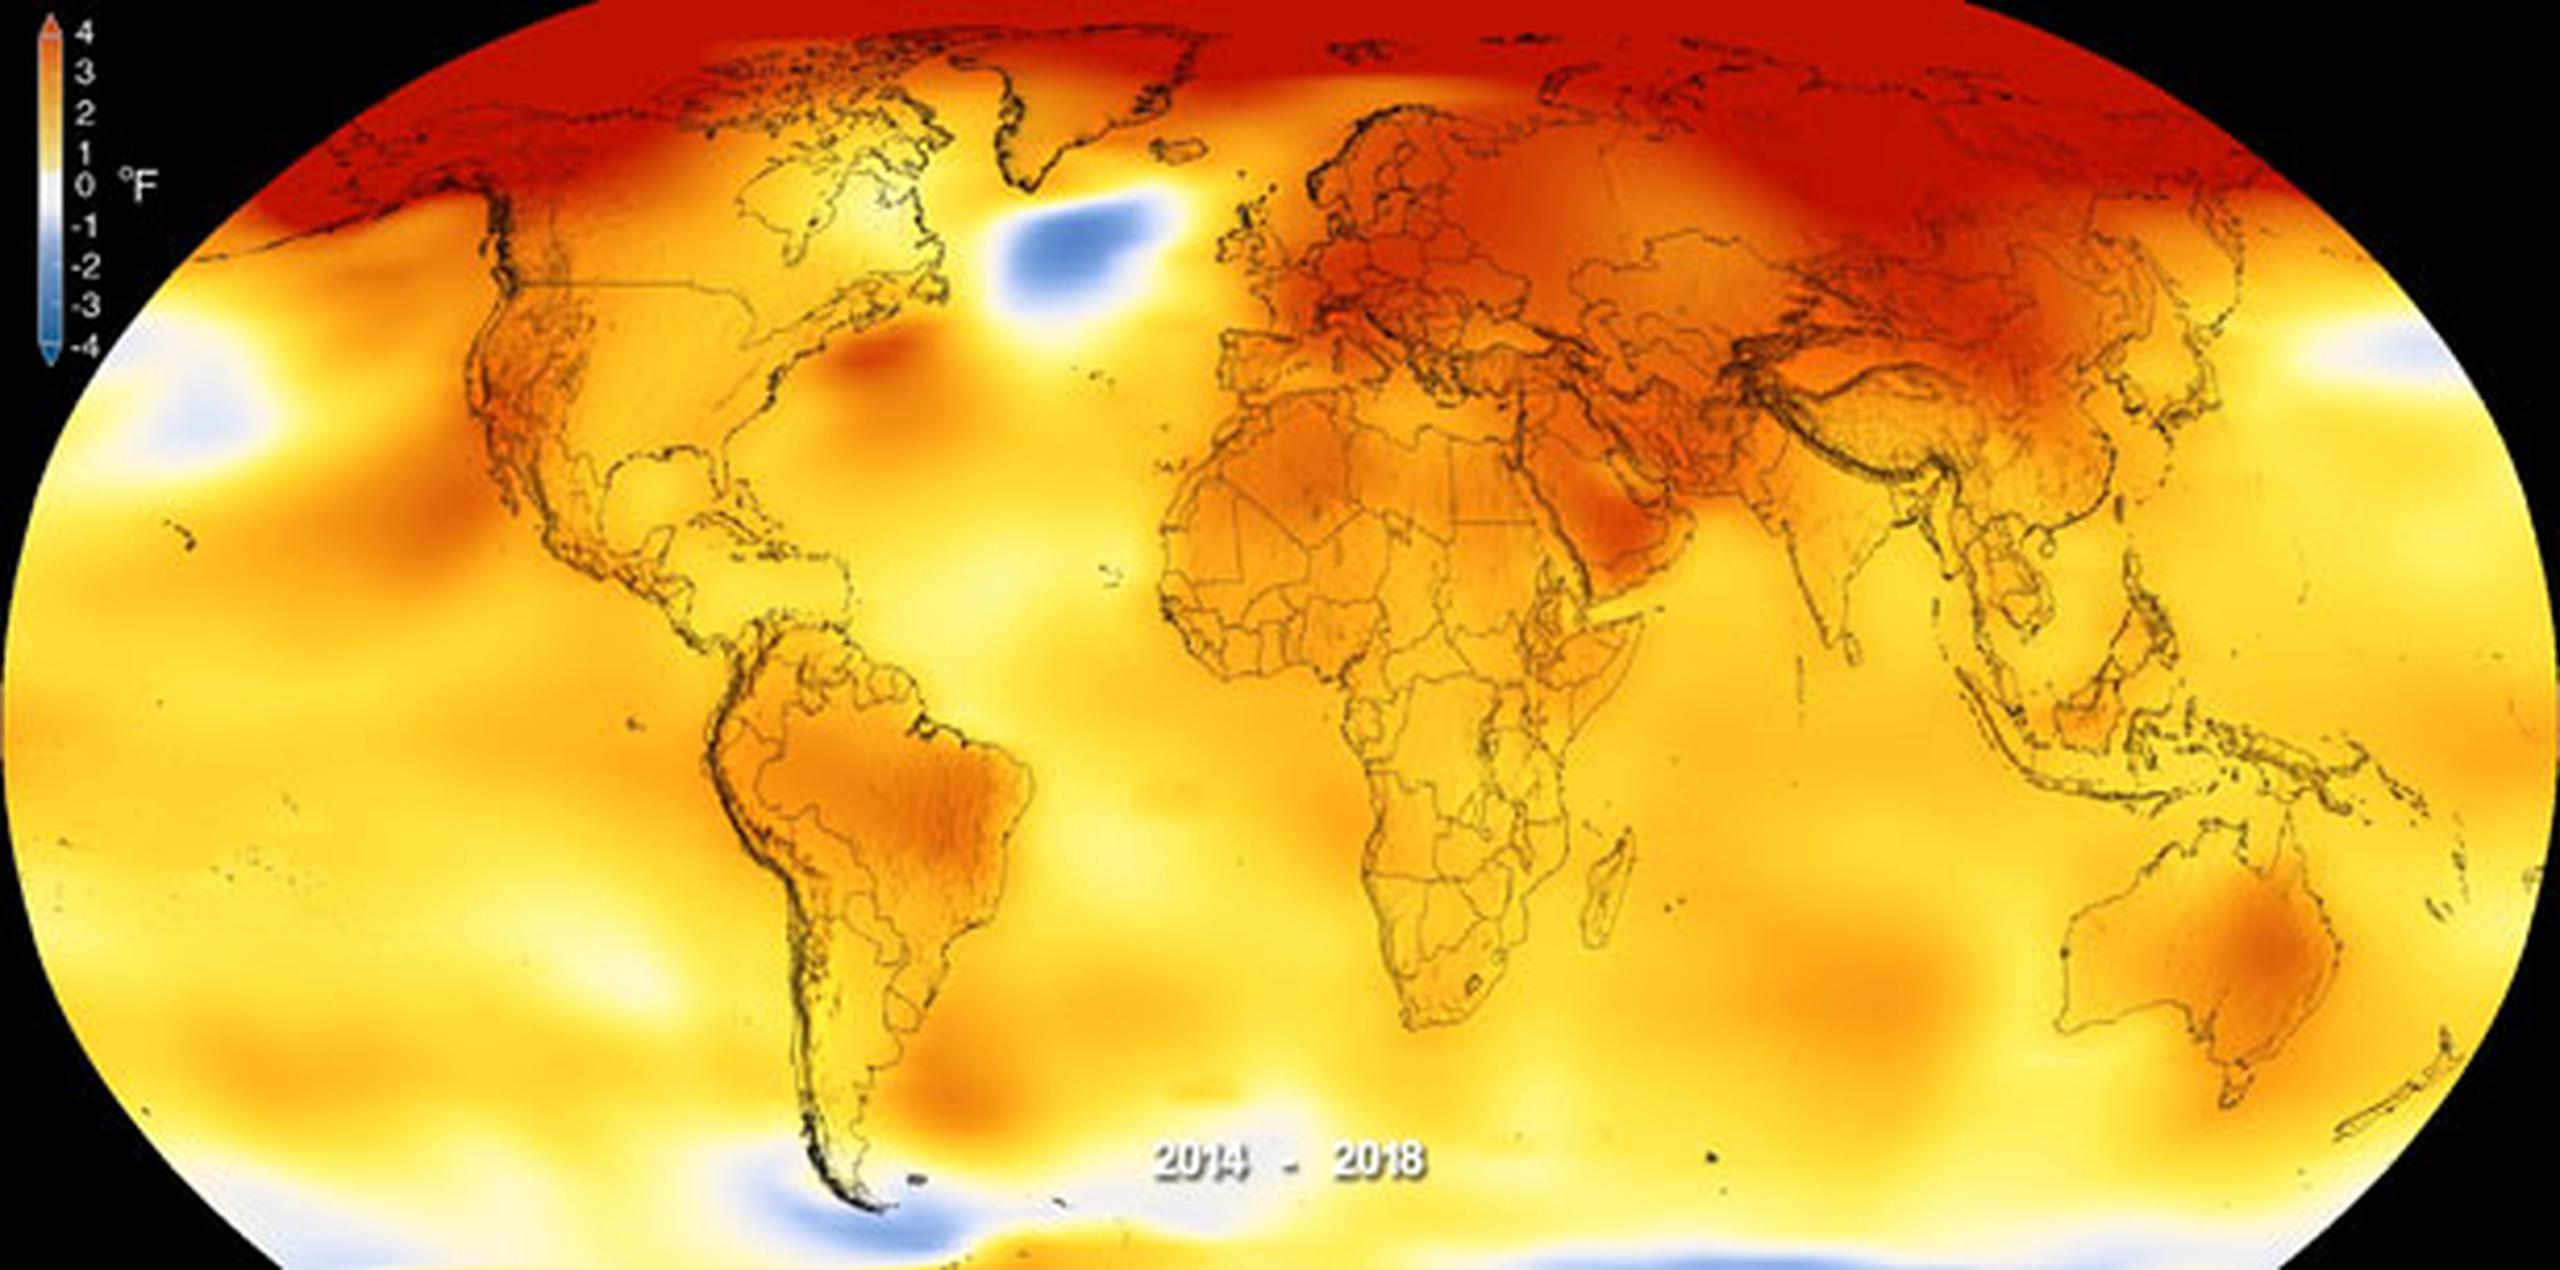 El calentamiento global ha provocado, entre otras cuestiones, el deshielo del Ártico y de la Antártida. (NASA)